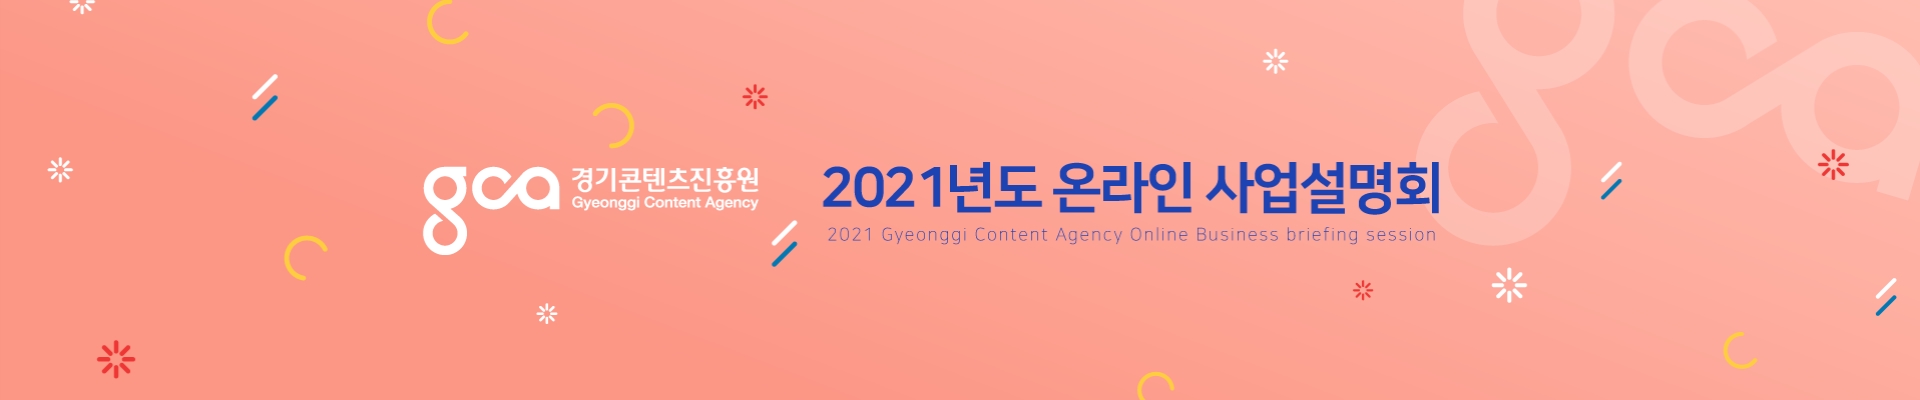 2021년도 경기콘텐츠진흥원 사업설명회